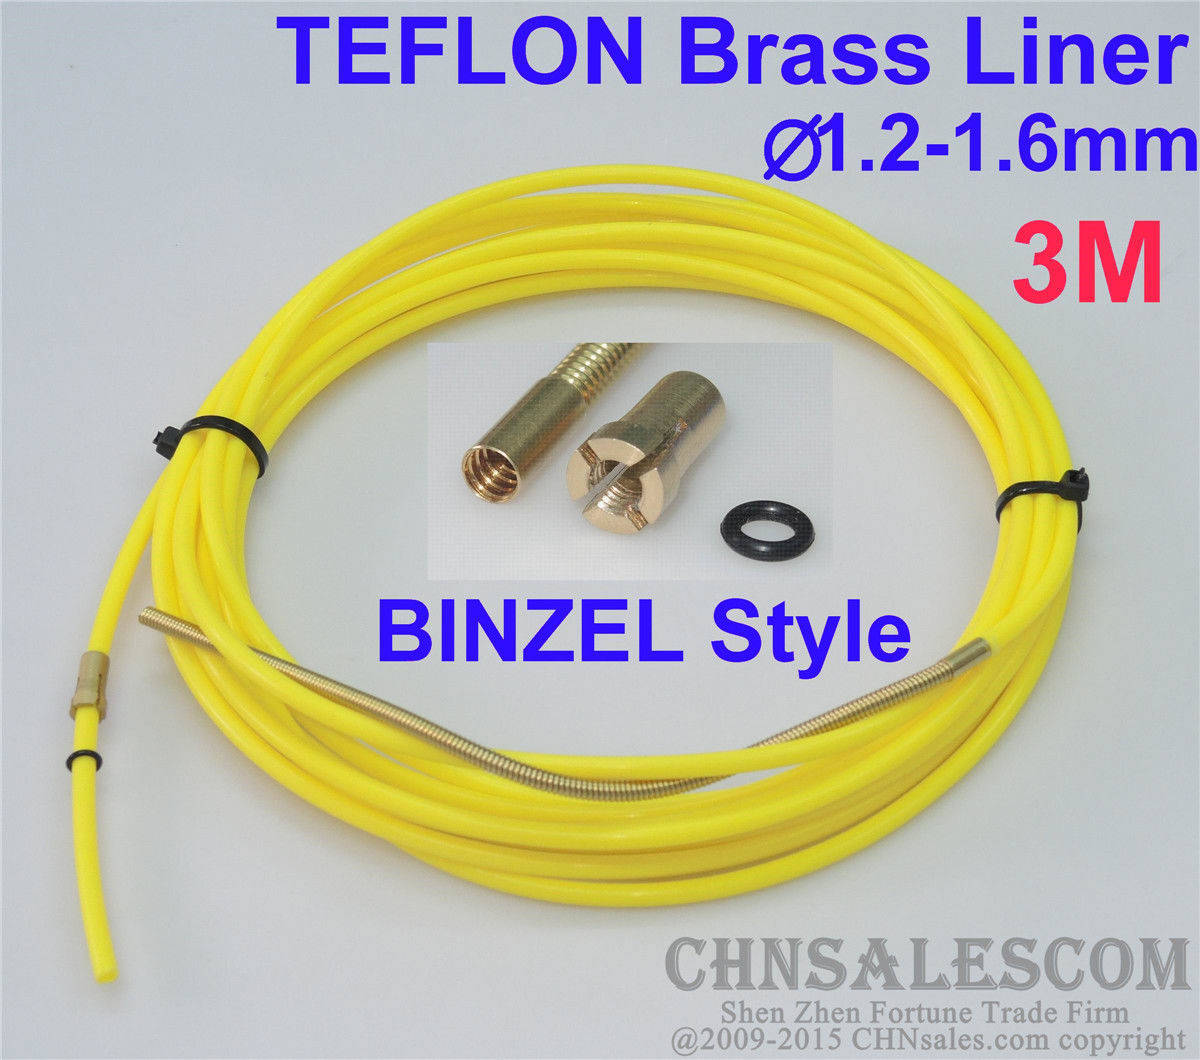 CHNsalescom BINZEL Stijl PTFE met Messing Liner en Cooper Terminal 1.2-1.6mm Draad 3M 10ft Geel